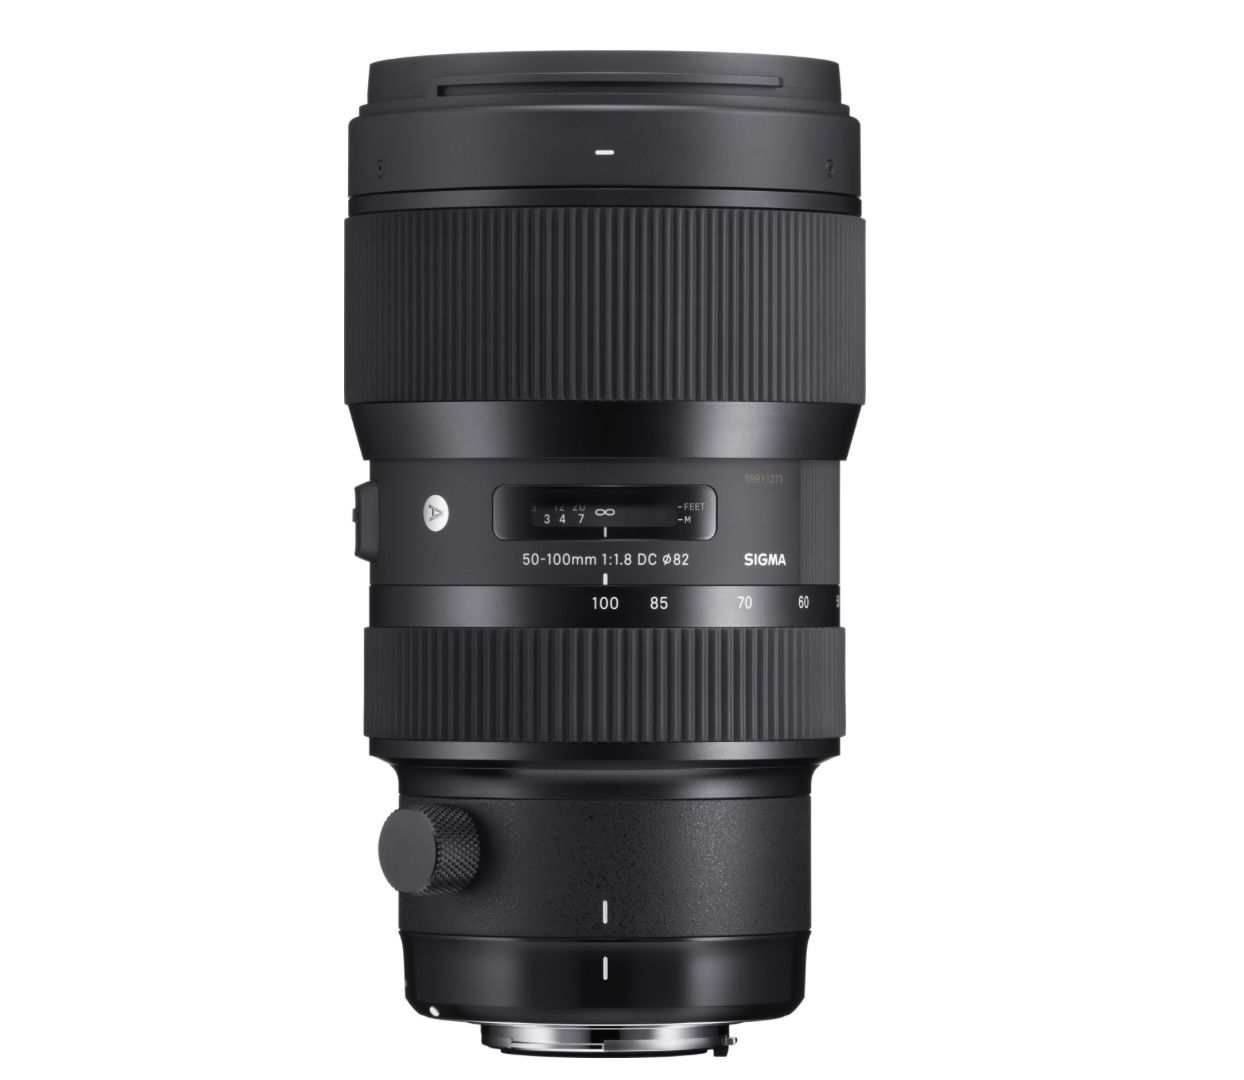 Sigma 50 100mm F1,8 DC HSM Art Objektiv für Nikon Objektivbajonett für 737,79€ (statt 1.009€)